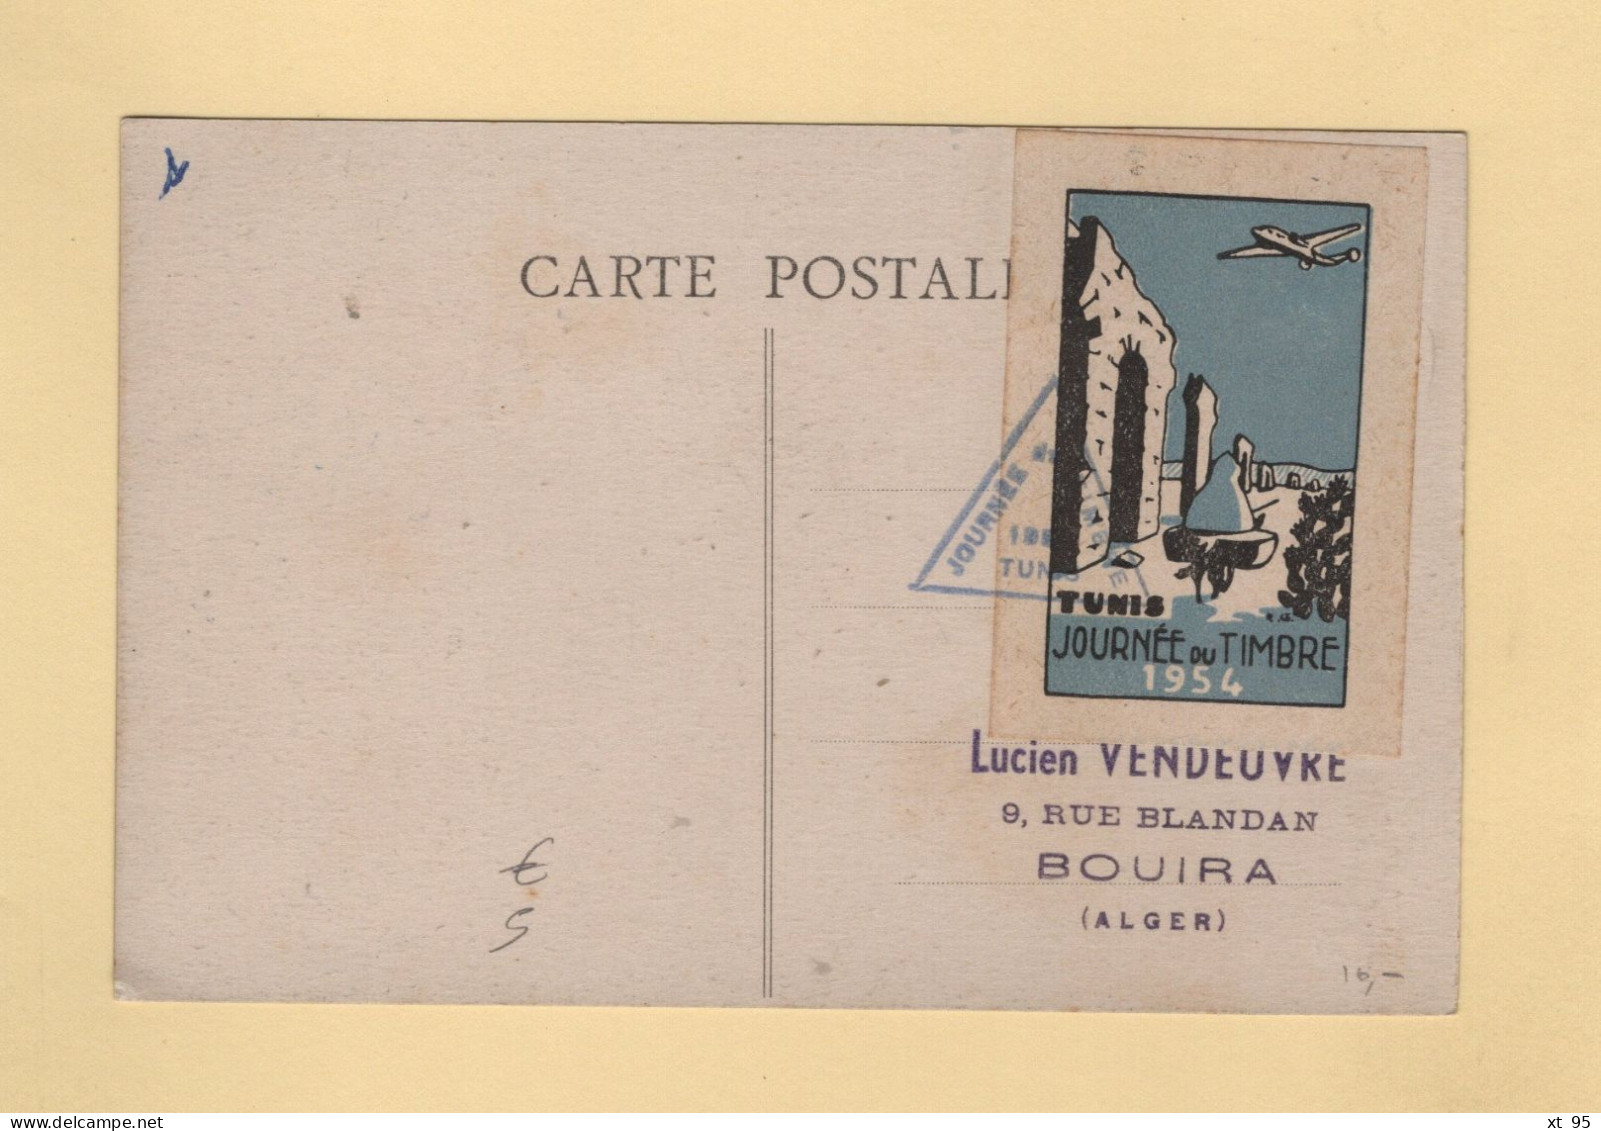 Tunisie - Journee Du Timbre - 1954 - Vignette Au Dos - Covers & Documents